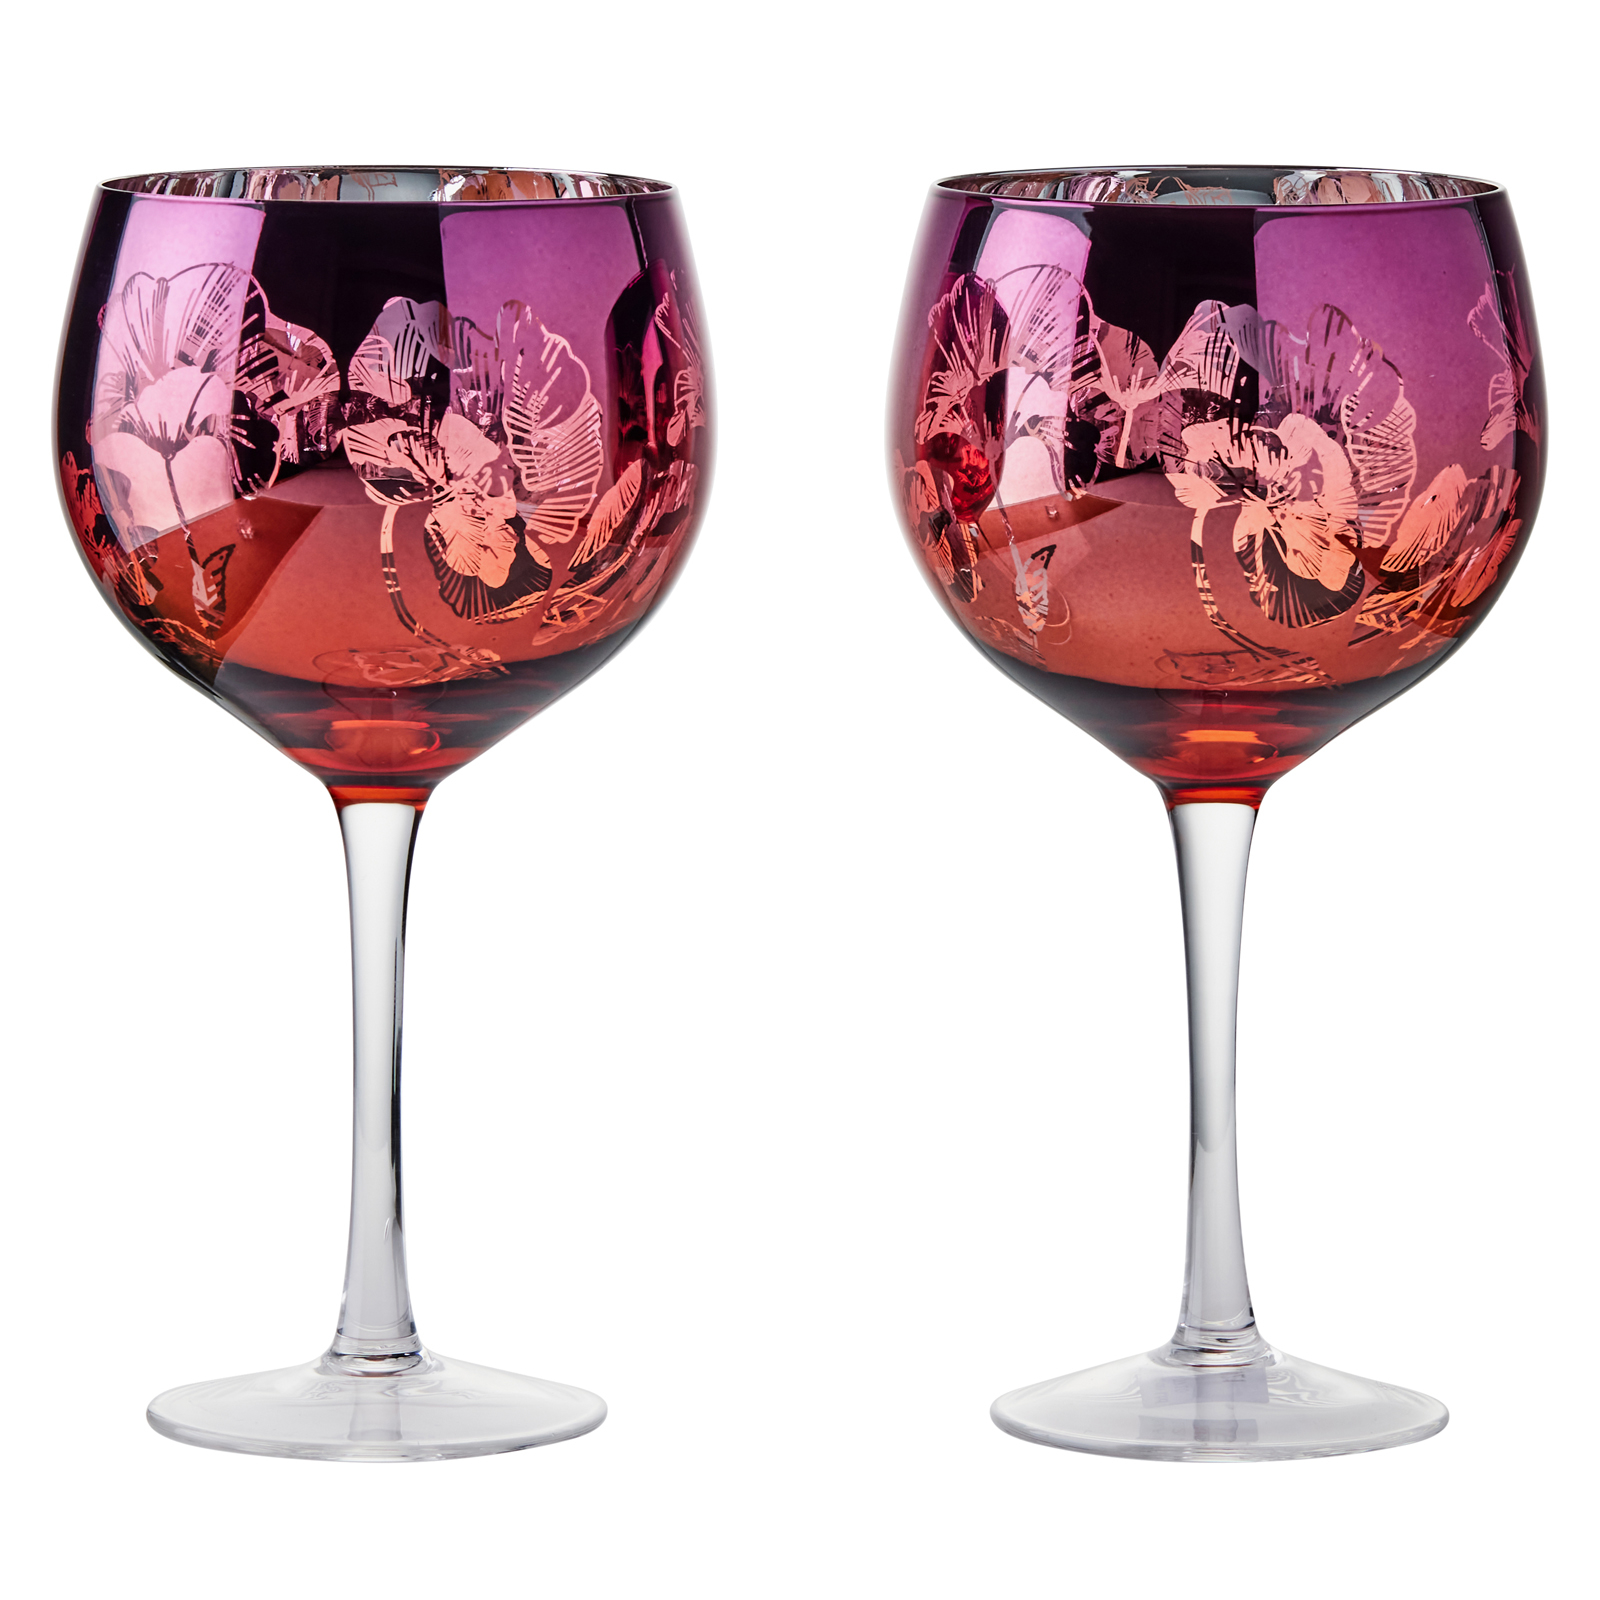 Visuel de Lot de 2 verres à gin Bloom by Artland - Bloom Un décor magnifique avec un design détaillé rose, orange et argent, ces verres à gin exclusif comportent un bouquet de fleurs miroir, le tout sur un grand bol incurvé, et une tige haute pour une élégance ultime